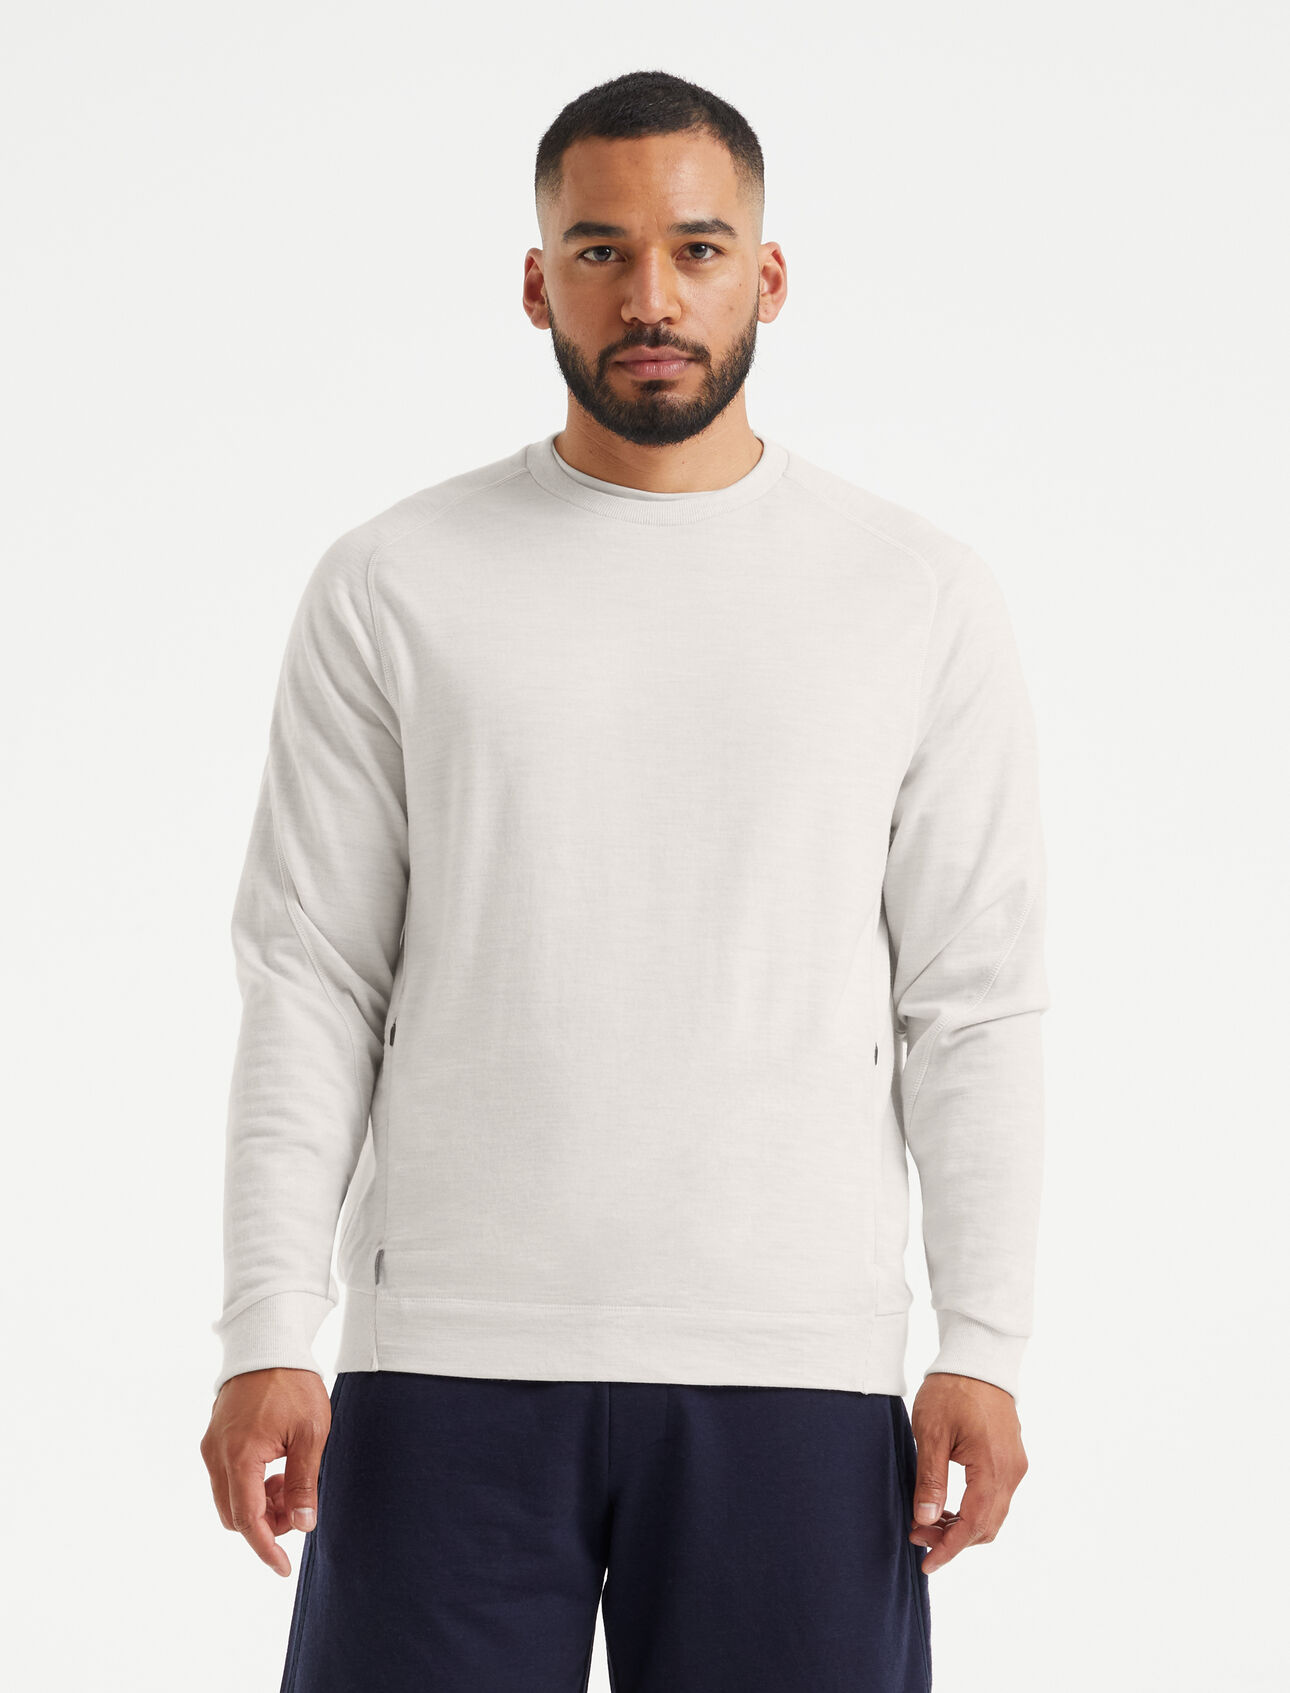 Herr Merinotröja Merino sweatshirt är en klassisk tröja som är tillverkad av frottématerial i 100% merinoull för att kunna kombinera maximal komfort med en modern look.